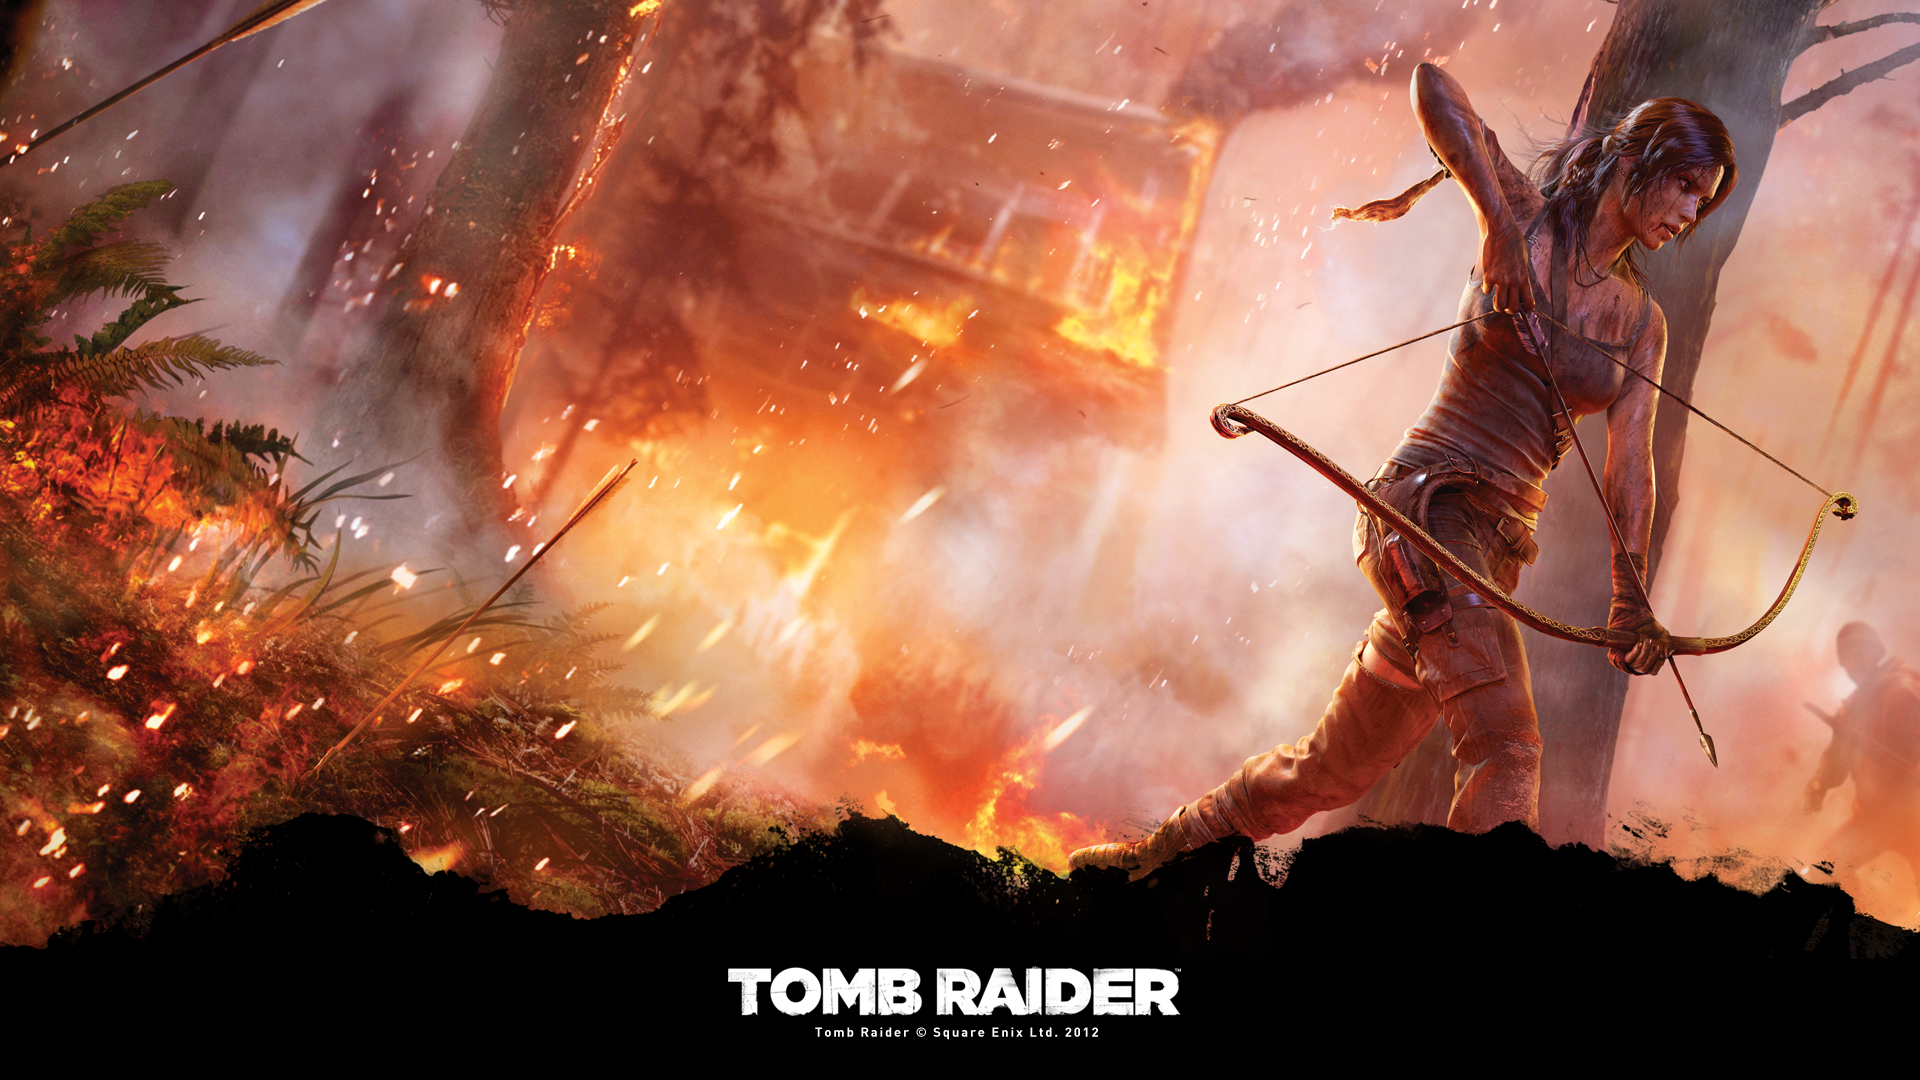 Tomb Raider 2013 Fire - HD Wallpaper 